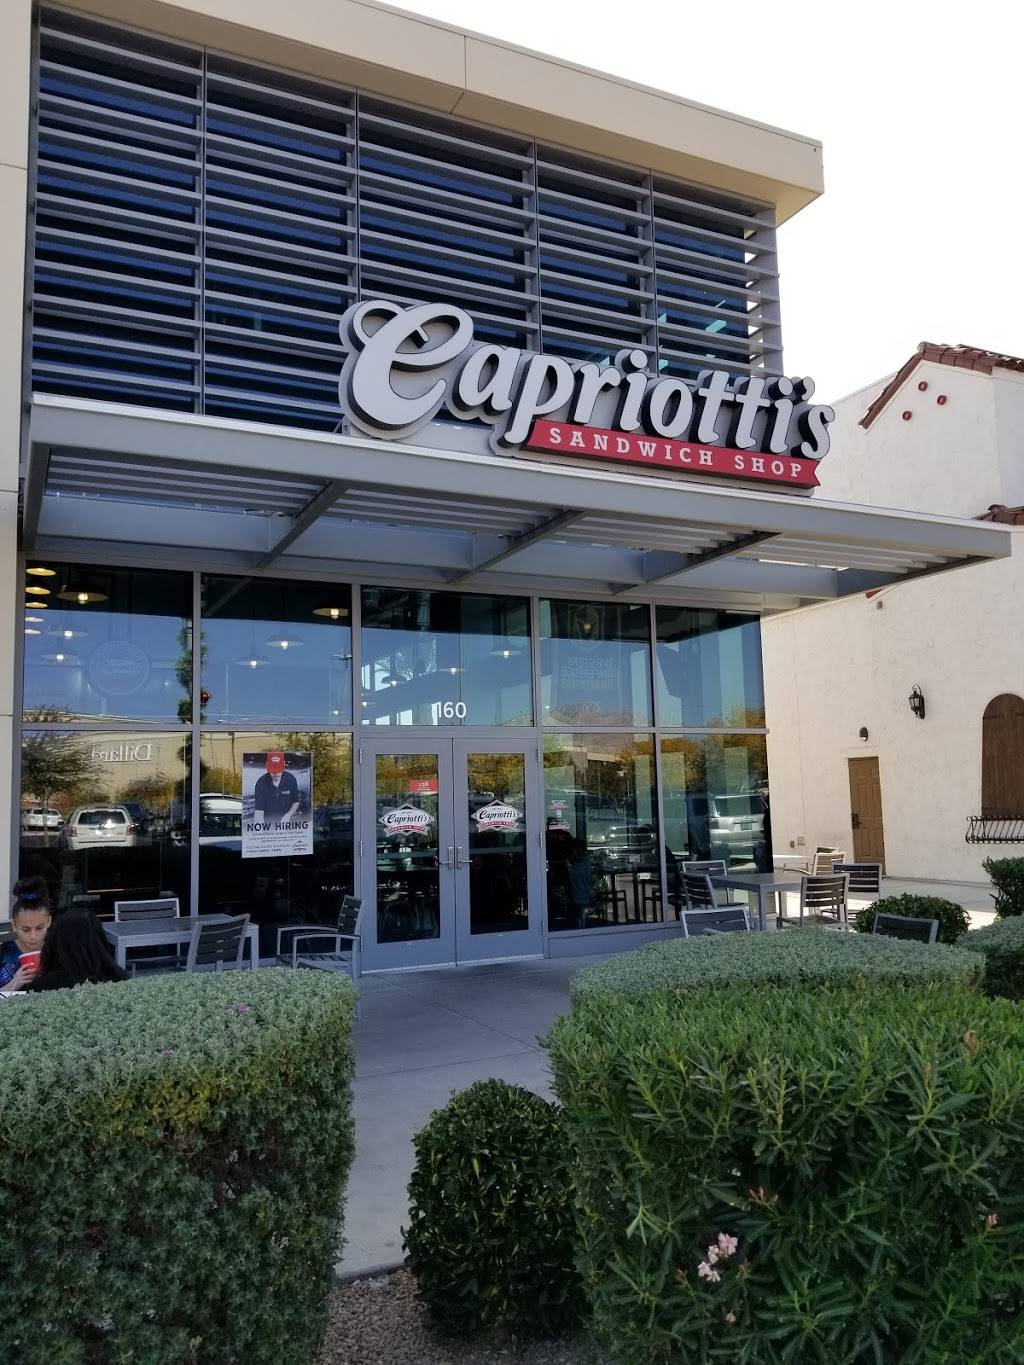 Capriottis Sandwich Shop | restaurant | 11010 Lavender Hill Dr suite 160, Las Vegas, NV 89135, USA | 7026787827 OR +1 702-678-7827